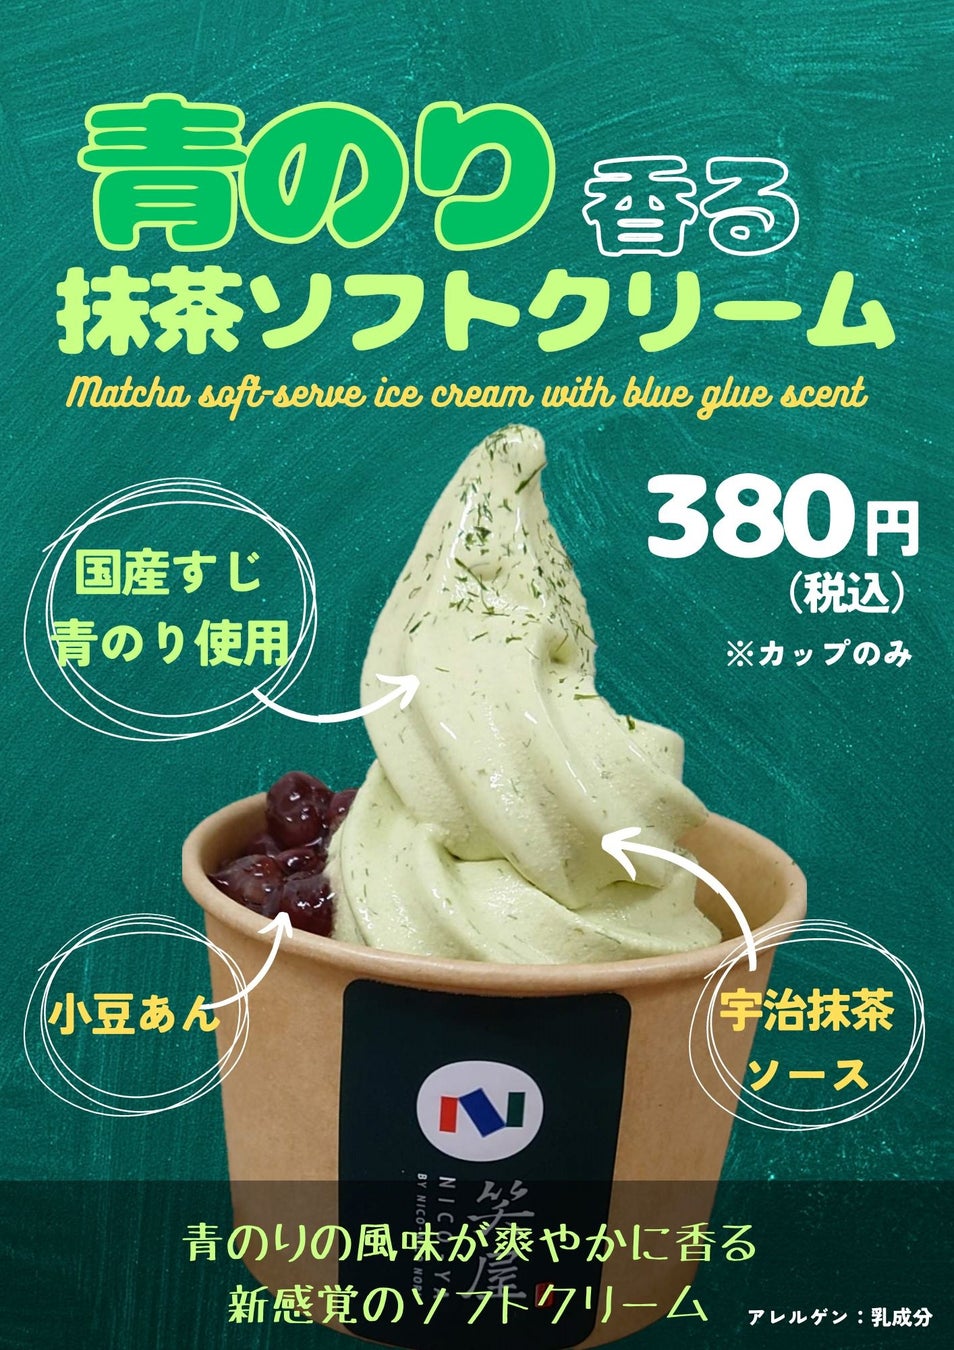 箱根湯本駅前　ティラミス専門店「箱根てゑらみす」にて新商品スイーツドリンク「コーヒーフロート」を発売いたします